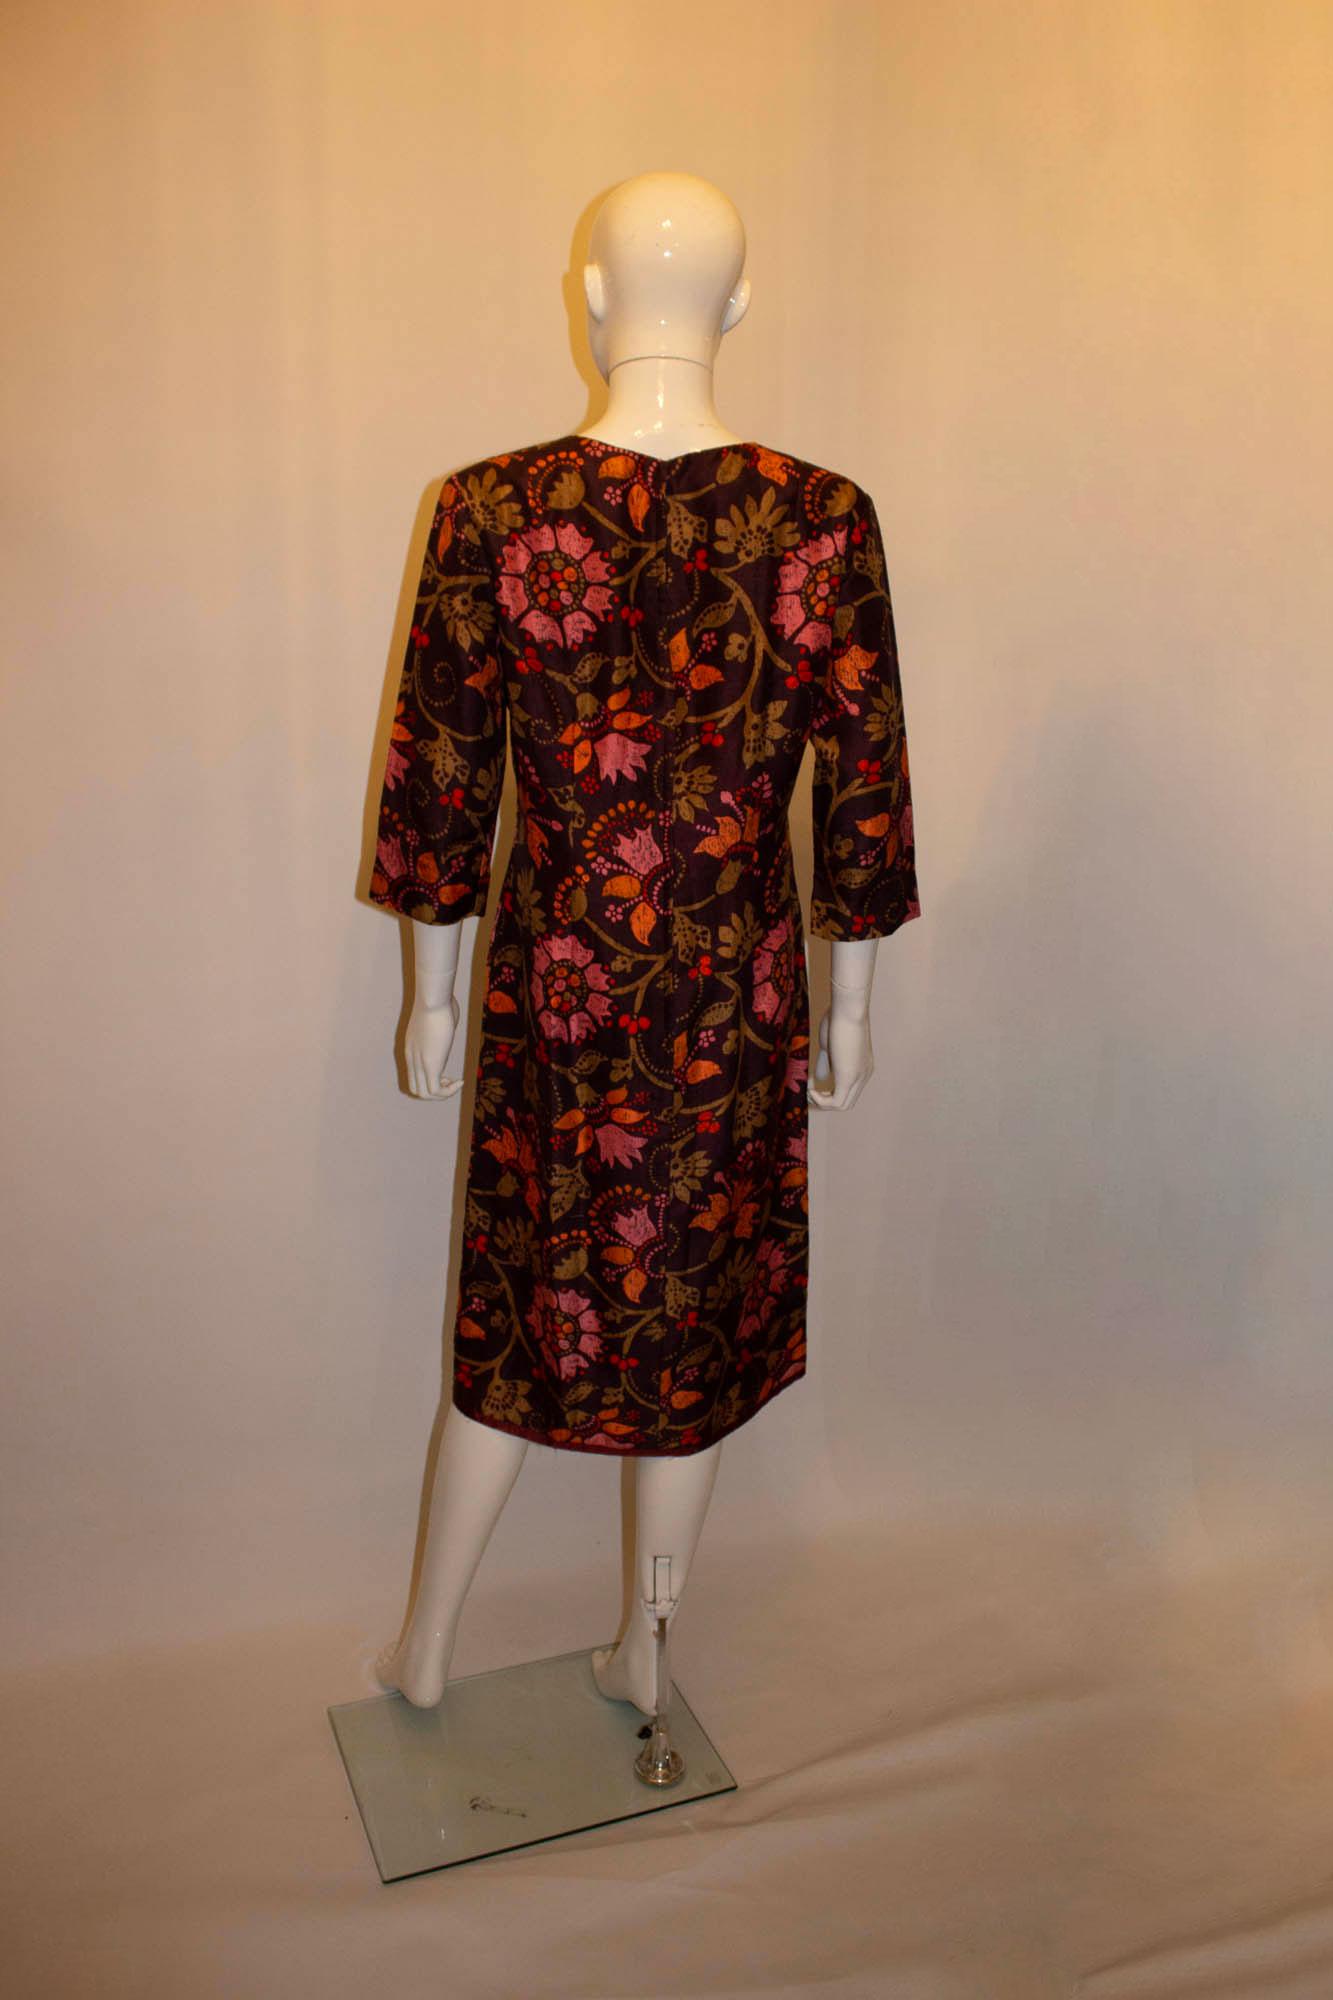 Une magnifique robe en soie de Bermard Frères ( Paris, Londres)  dans un imprimé Liberty. La robe a un fond marron, avec un motif rose et orange. Il présente une encolure ronde, des manches aux coudes et est entièrement doublé. Mesures : Buste